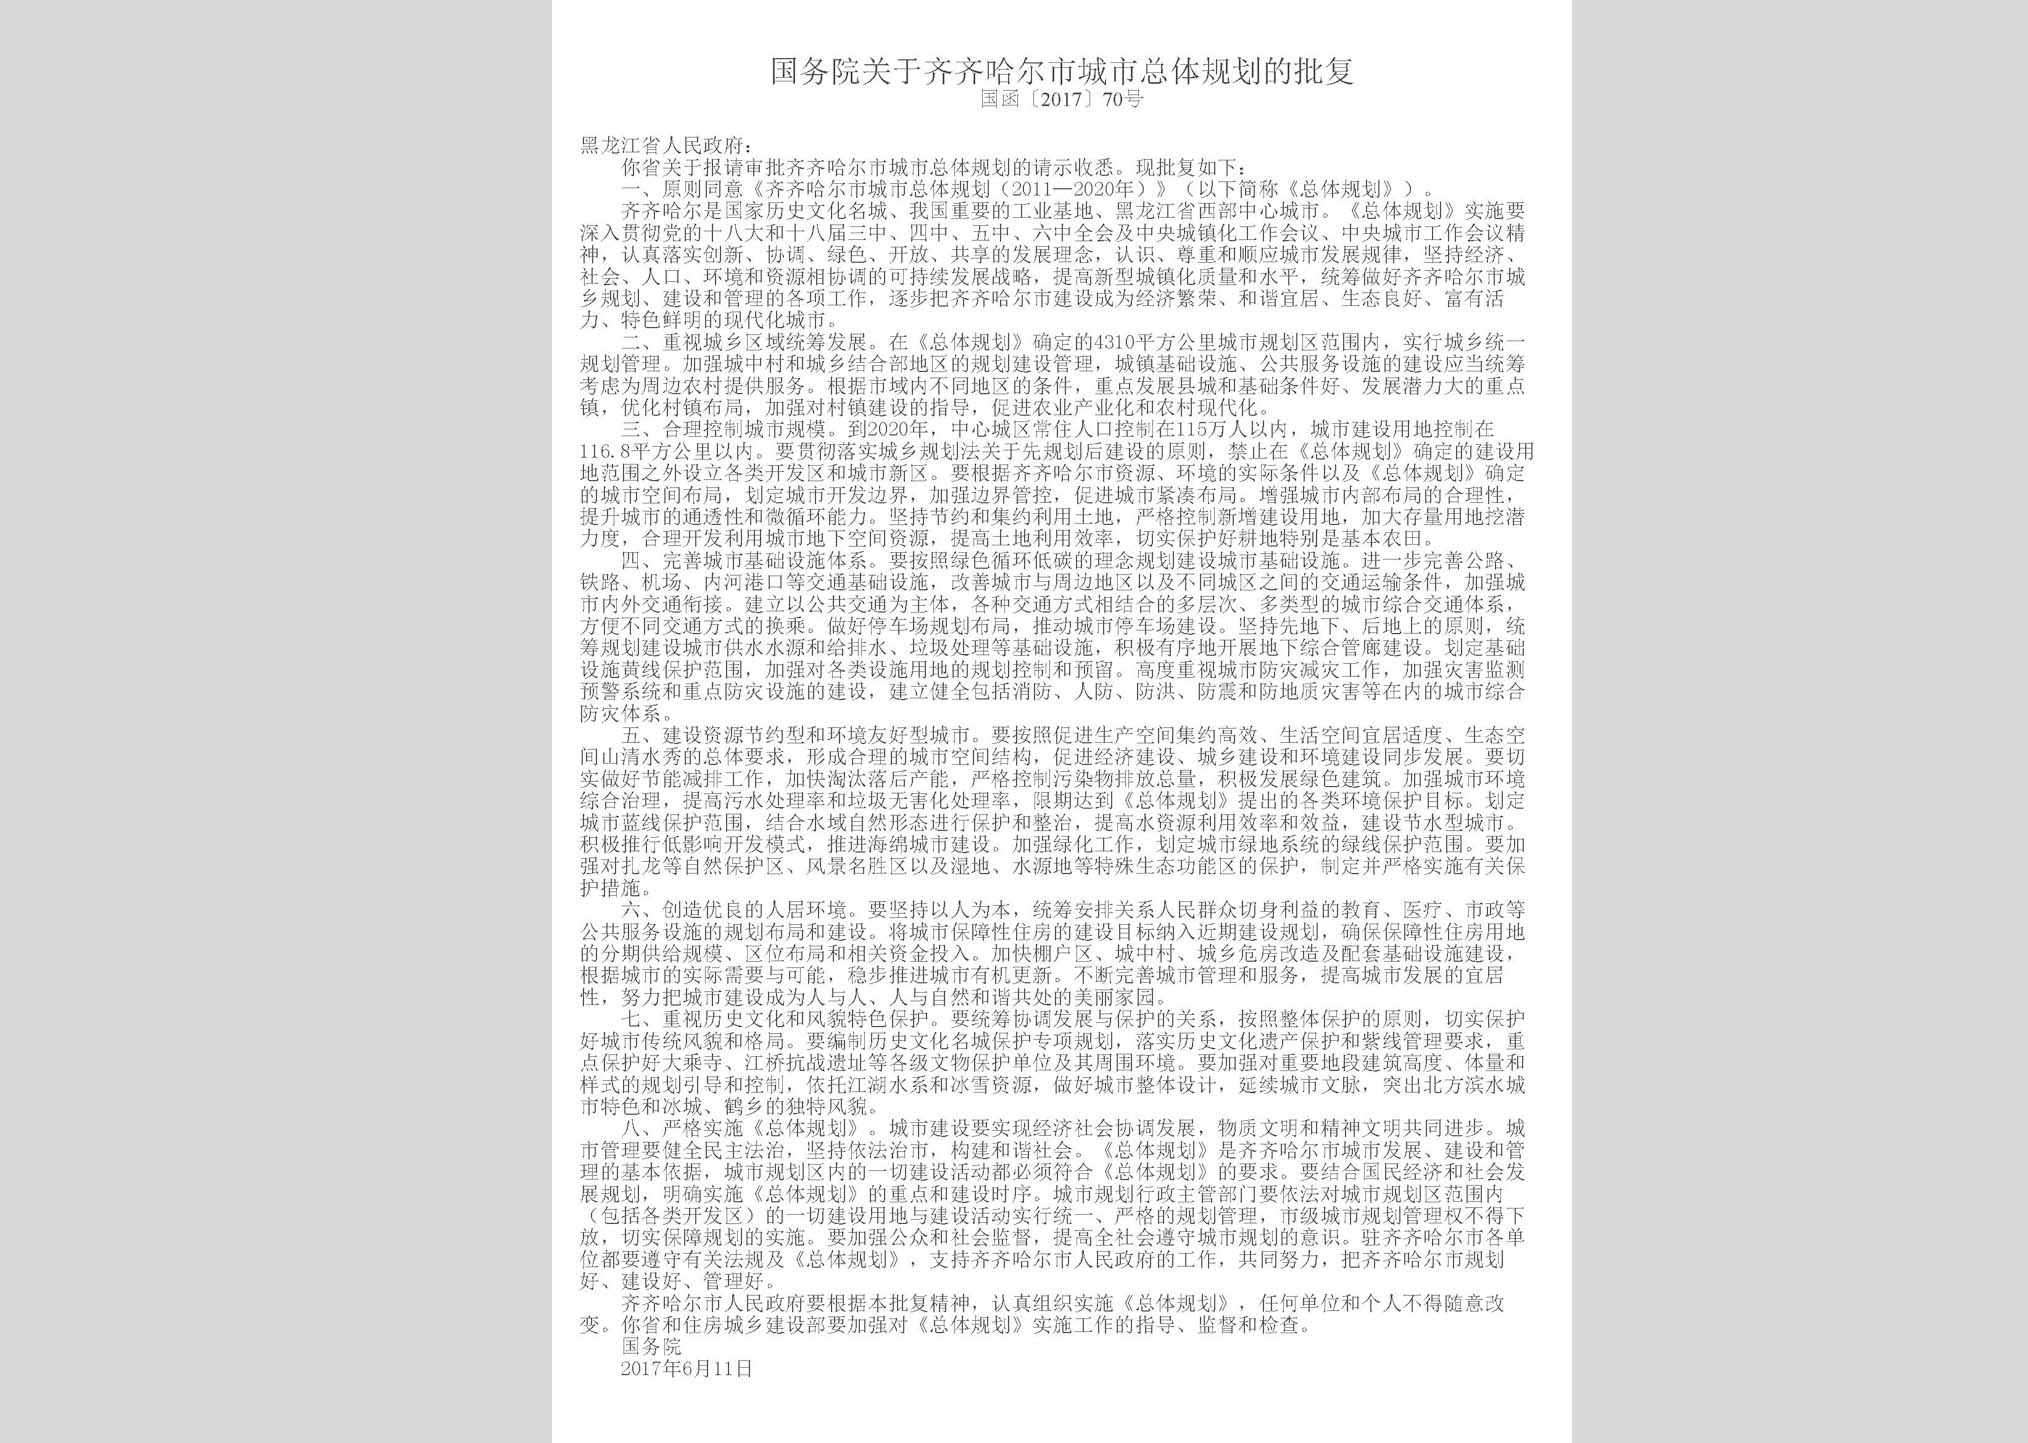 国函[2017]70号：国务院关于齐齐哈尔市城市总体规划的批复